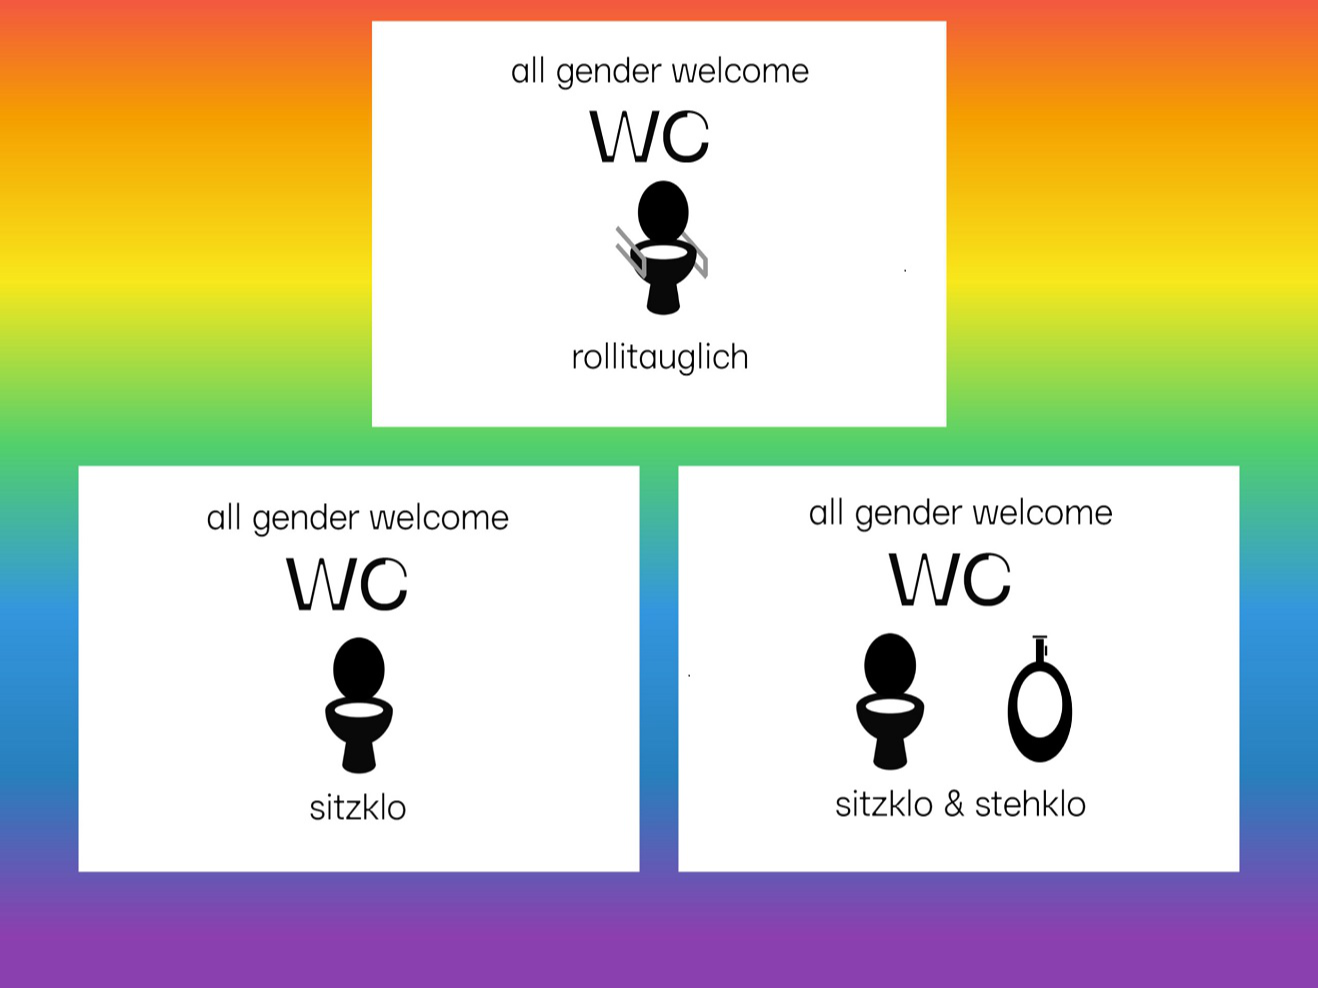 Beschilderung der drei gender-neutralen Toiletten: Rolli-tauglich, Sitzklo, Sitz- und Stehklo